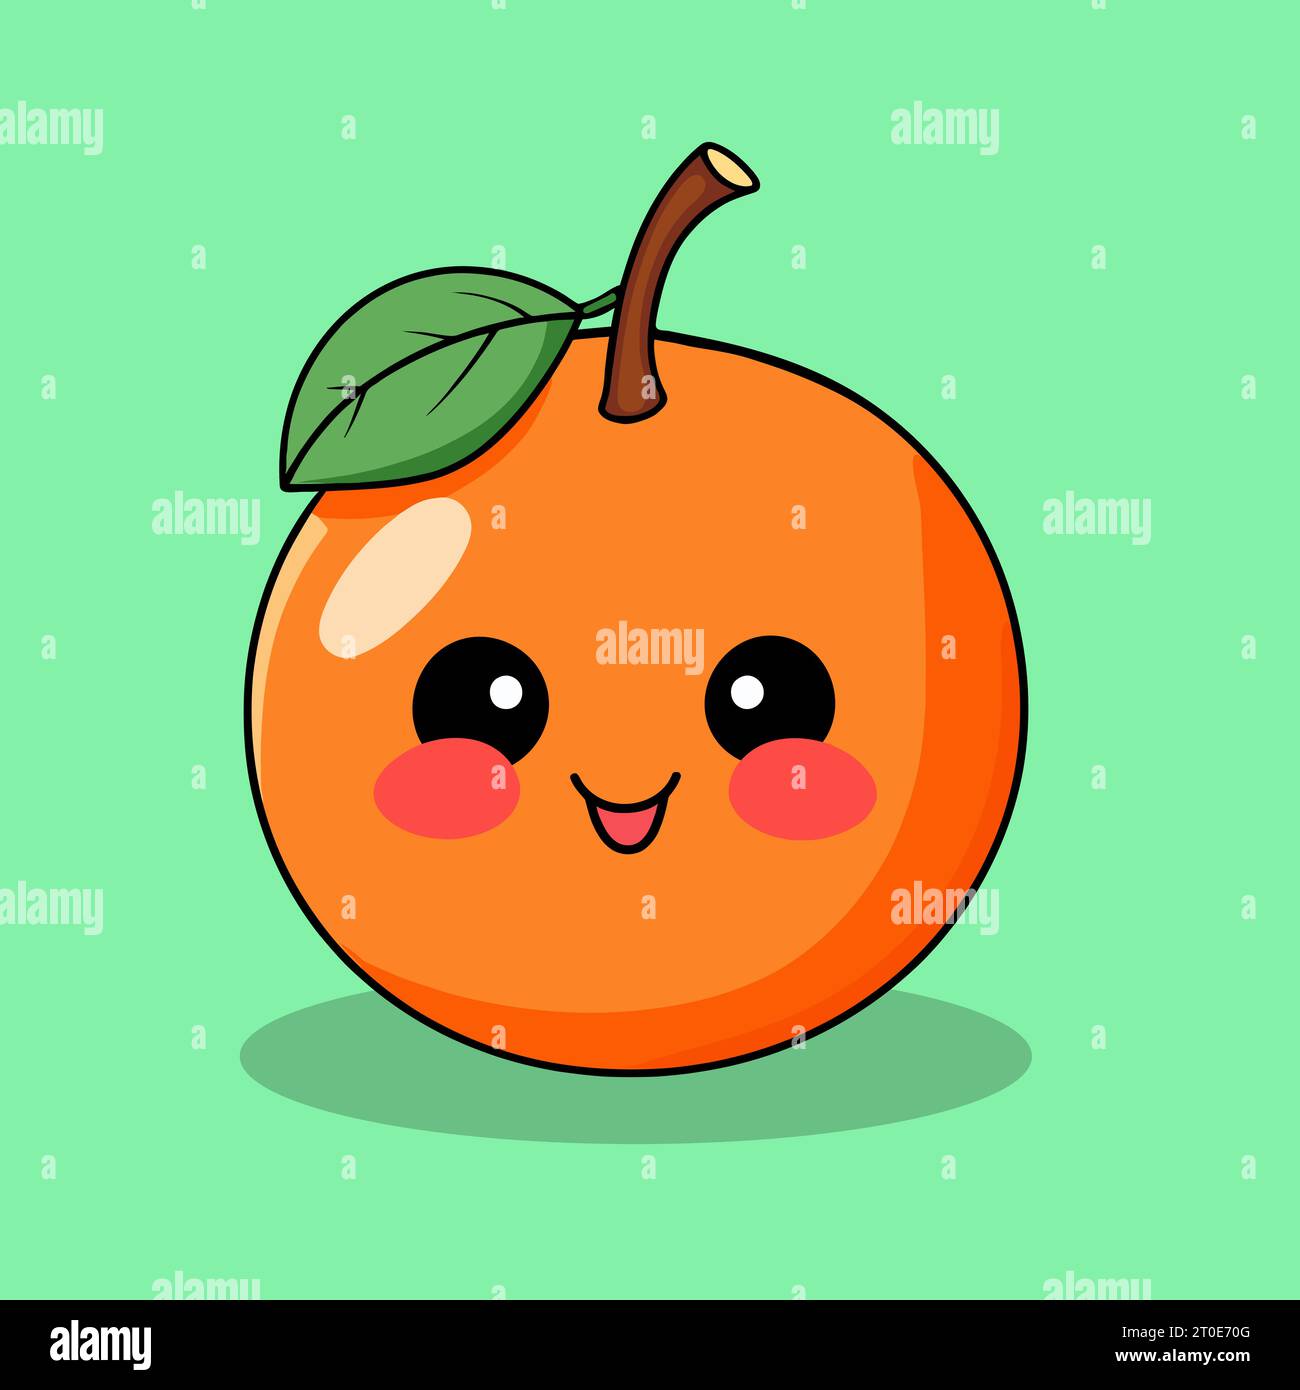 Un'affascinante illustrazione arancione in stile Kawaii, caratterizzata da un allegro frutto d'arancia con un viso amichevole, guance arrossenti e un felice demeano in kawaii Illustrazione Vettoriale